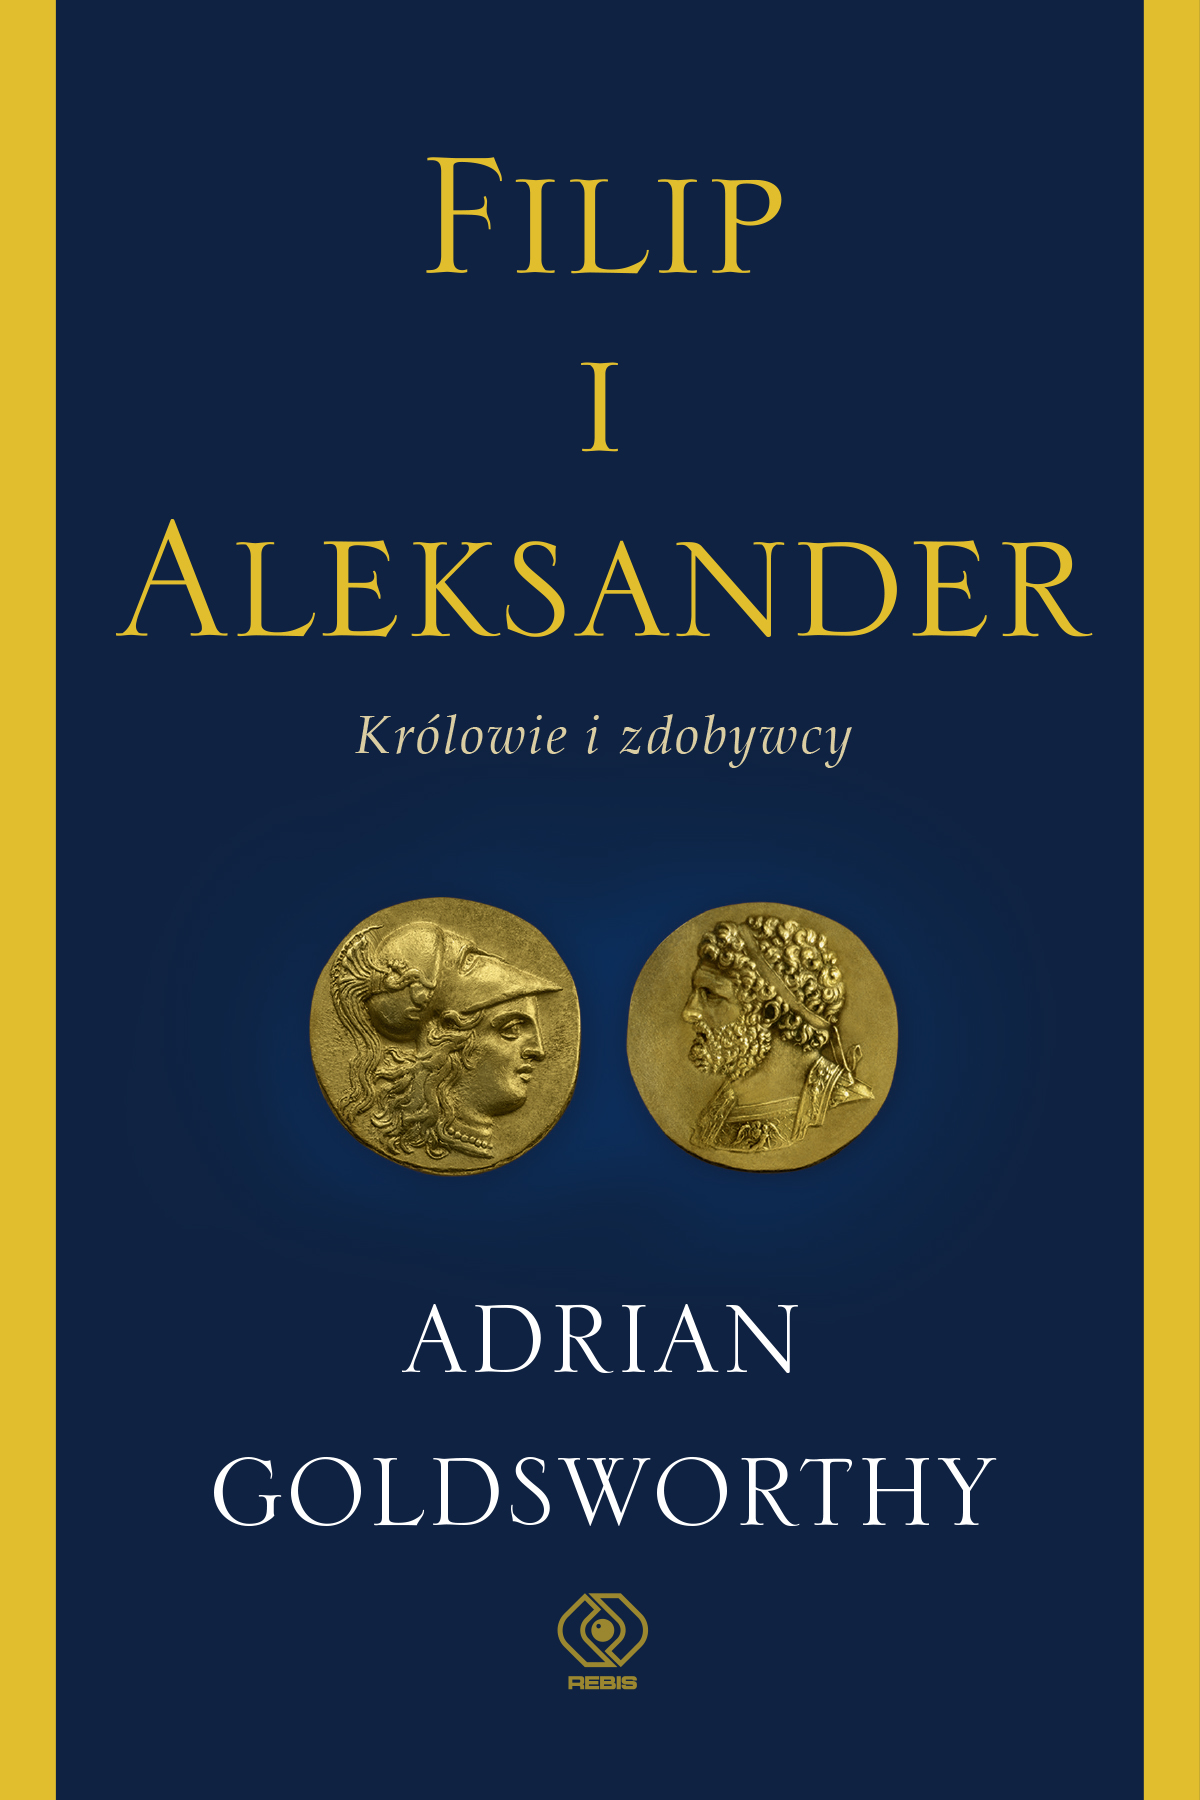 Premiery REBIS-u: "Filip i Aleksander. Królowie i zdobywcy", Adrian Goldsworthy 